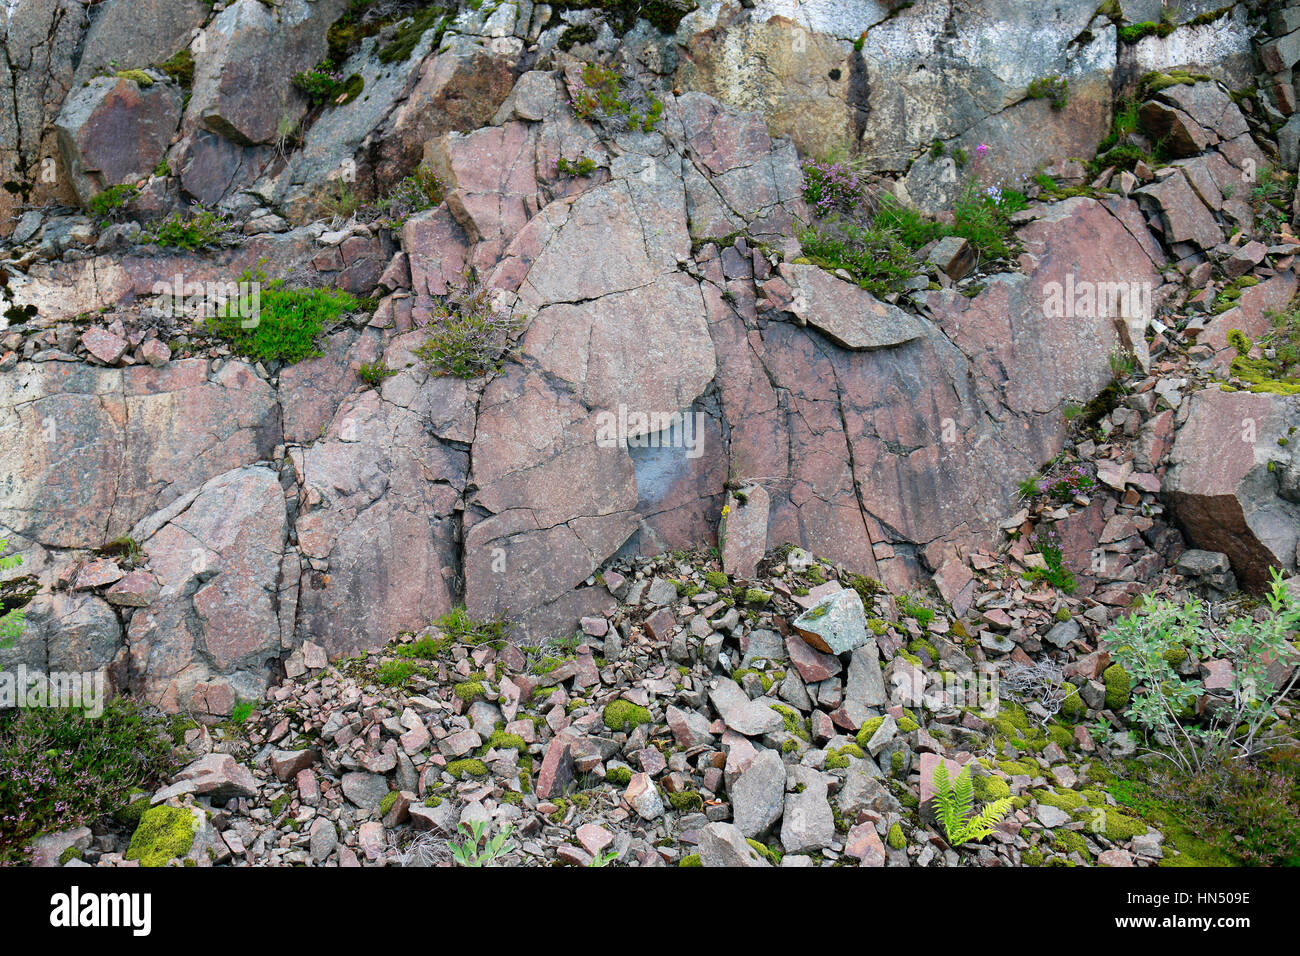 Impressionen: Granitgestein, Arstein, Lofoten, Norwegen. Stock Photo